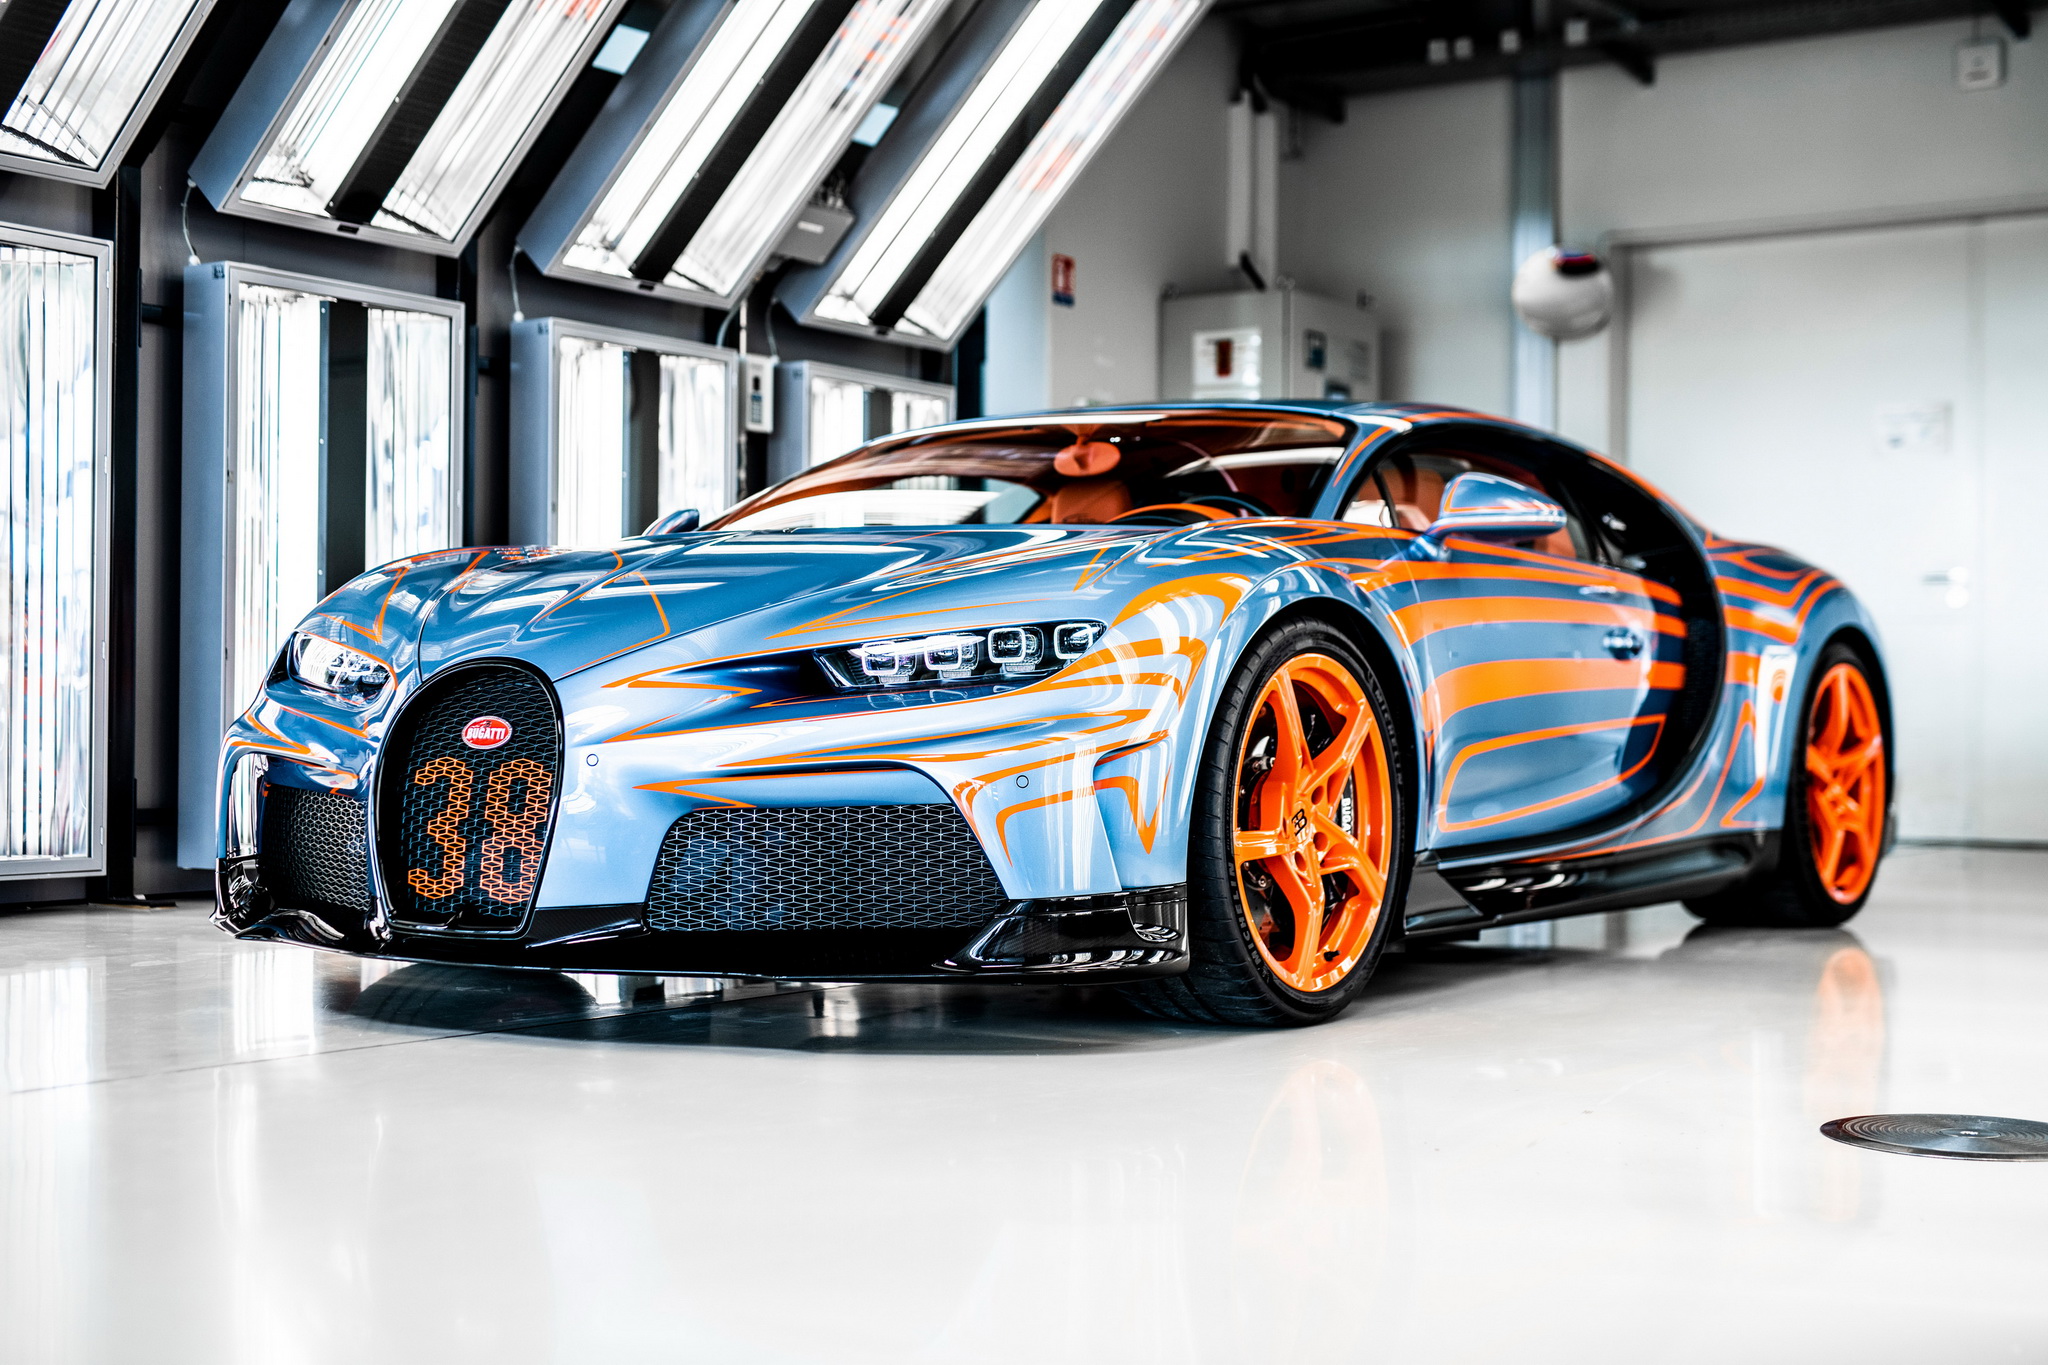 ชมความงาม Bugatti Chiron Super Sport คันแรก!! พร้อมส่งให้เจ้าของแล้ว...